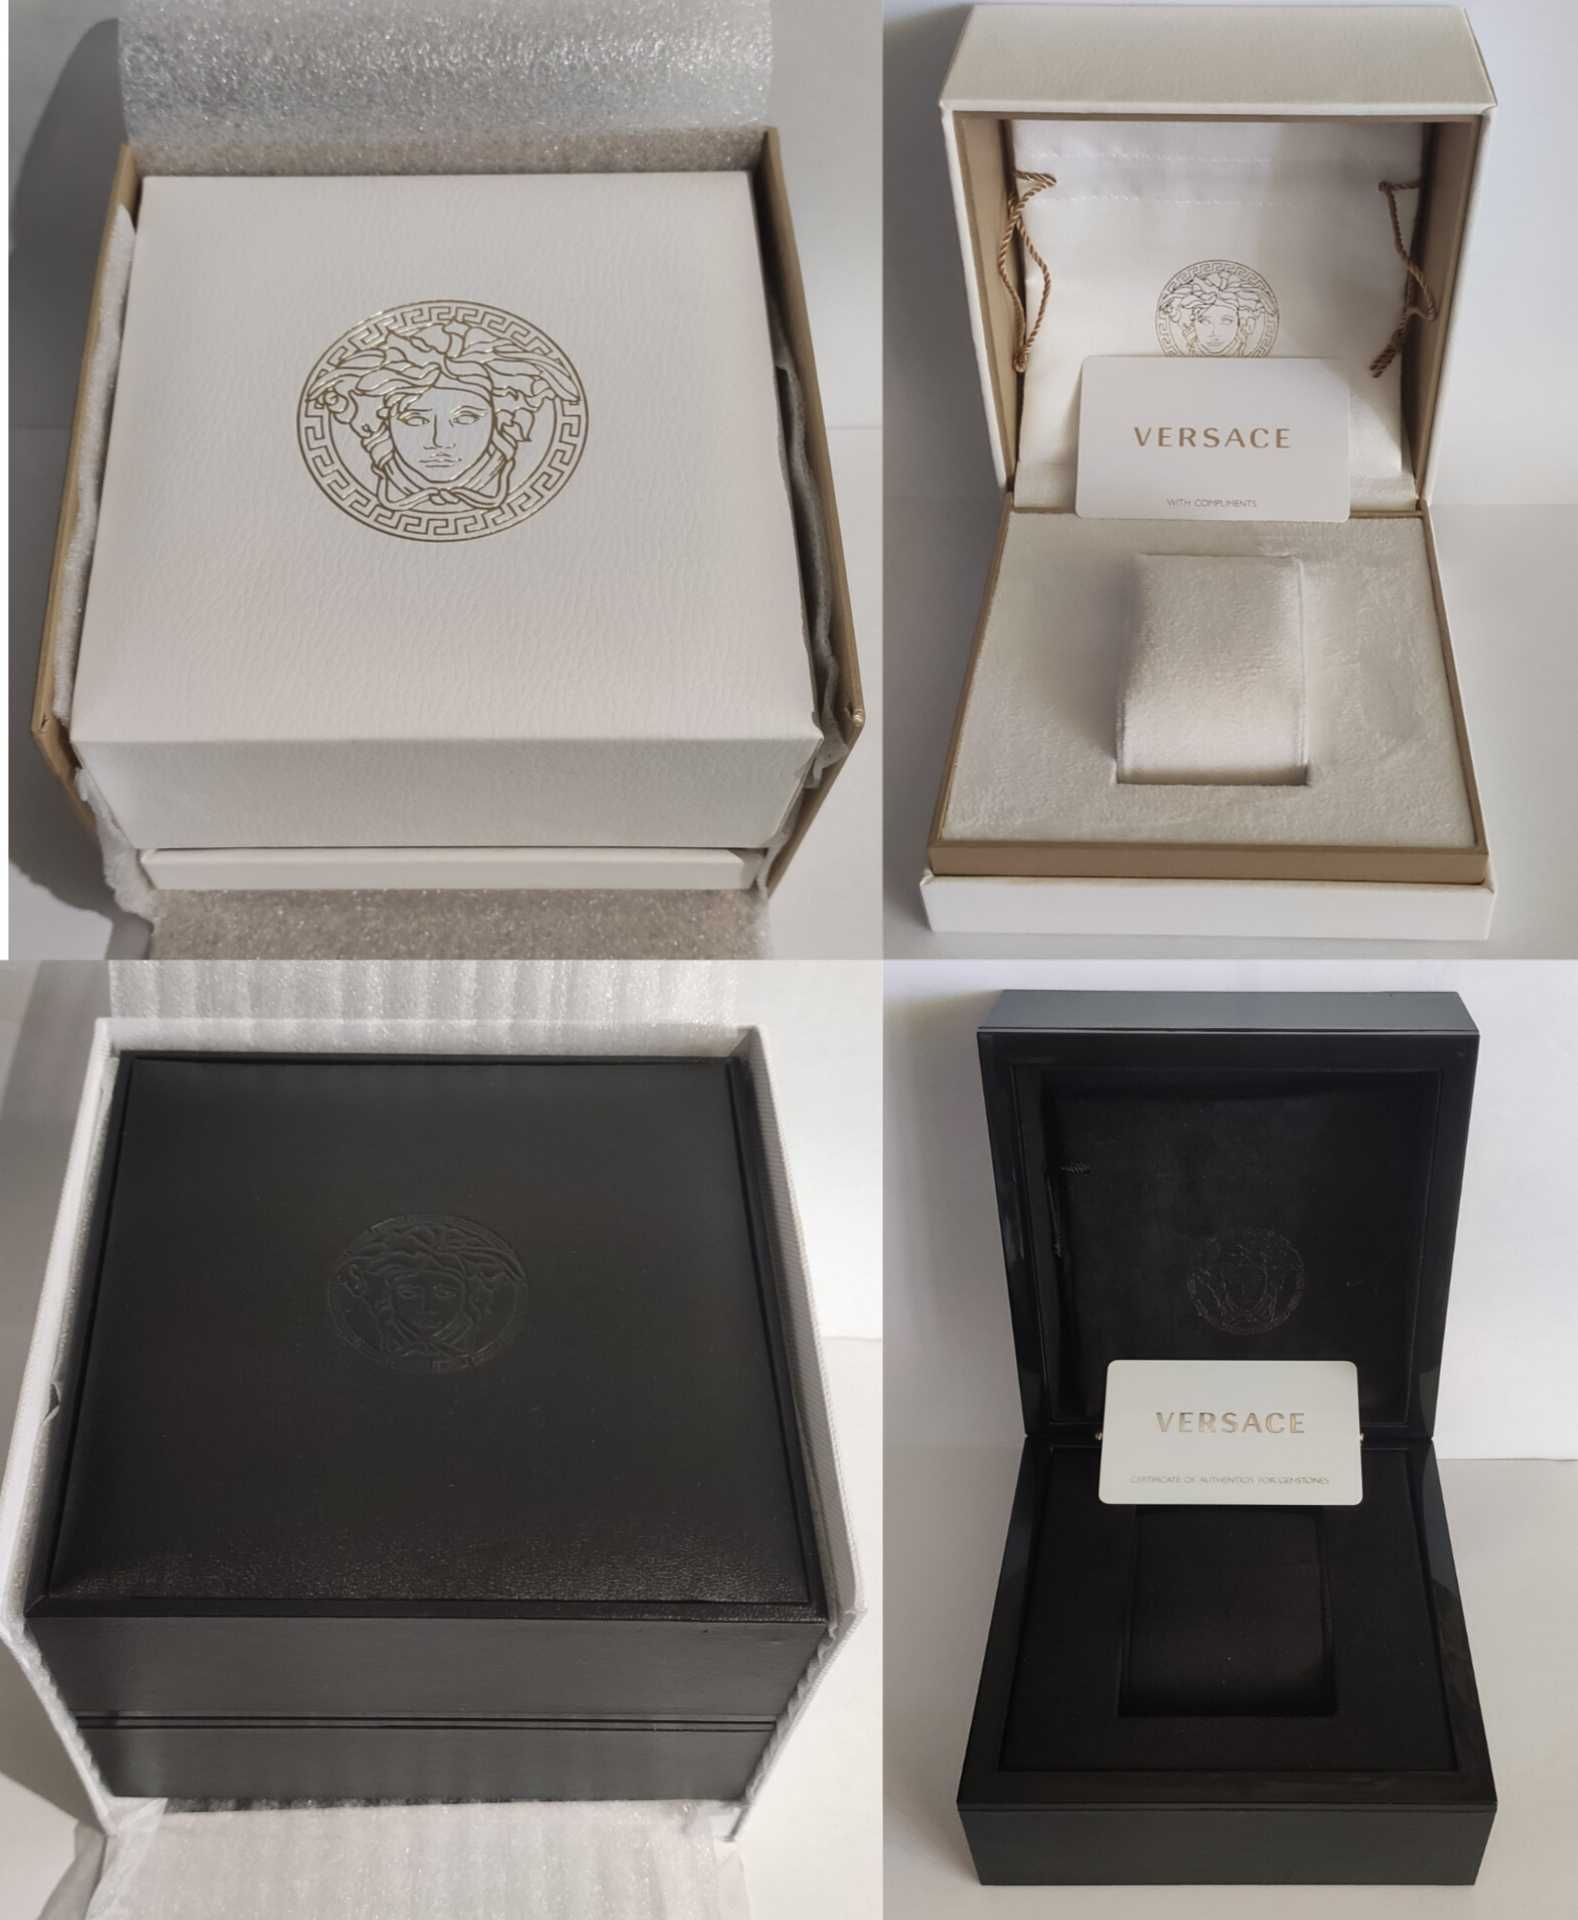 Ориг. коробки для часов Frederique constant, Louis Erard, Versace,